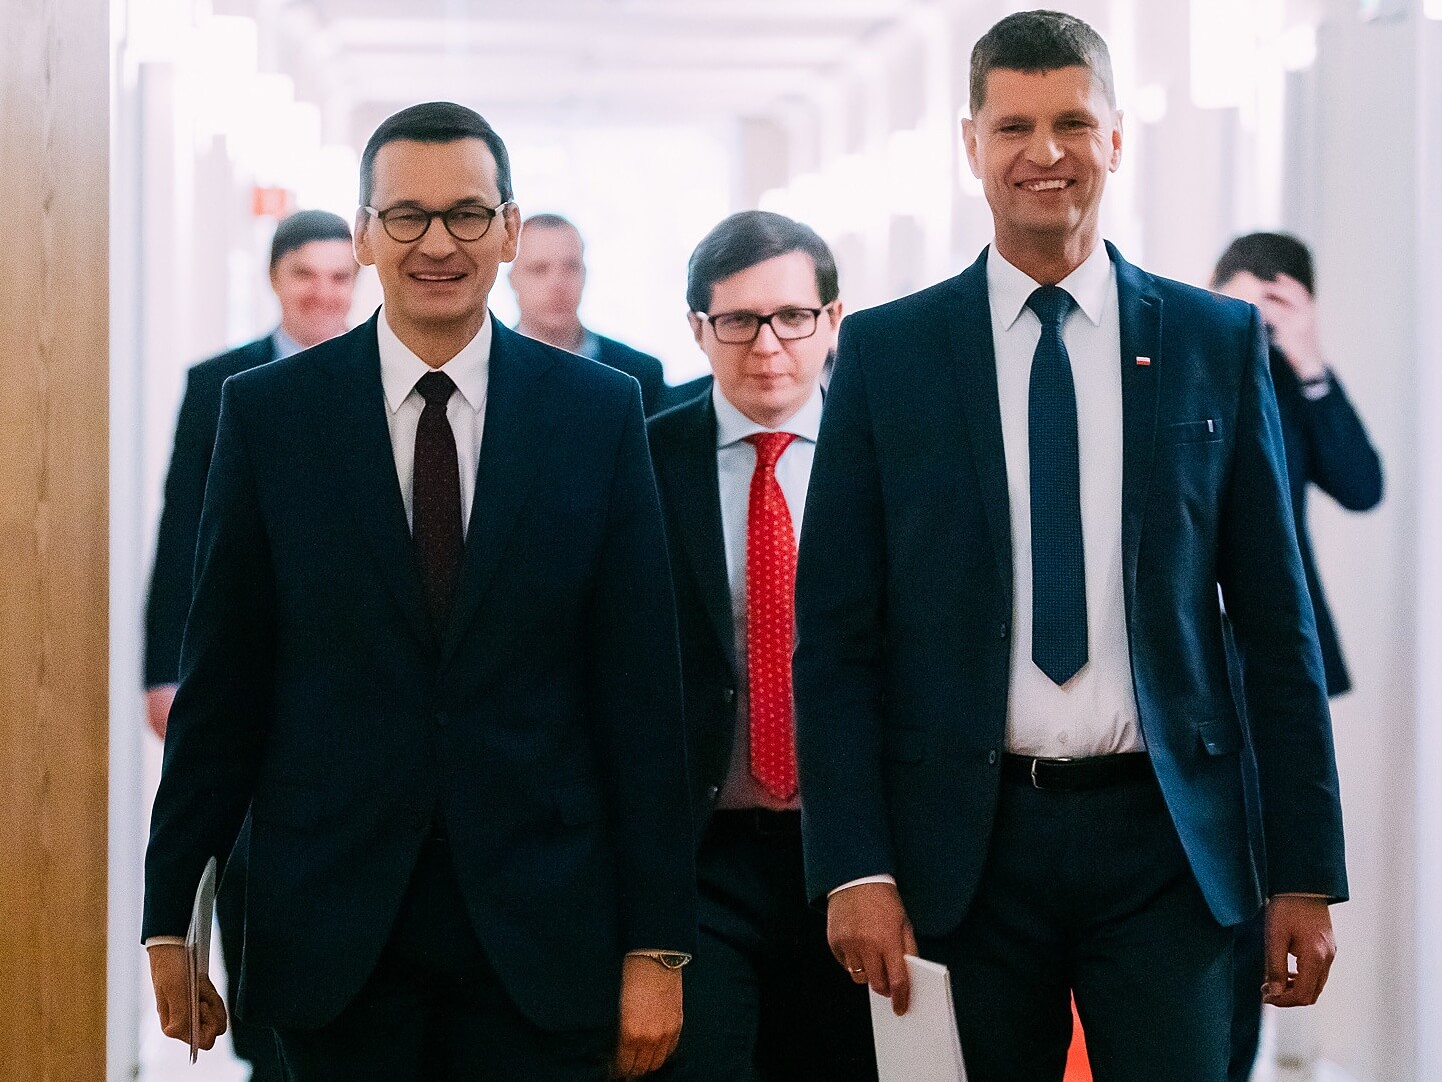 Na pierwszym planie premier Mateusz Morawiecki (z lewej) i minister edukacji Dariusz Piontkowski, konferencja prasowa na temat znoszenia ograniczeń związanych z COVID-19. Warszawa, 13 maja 2020 r.